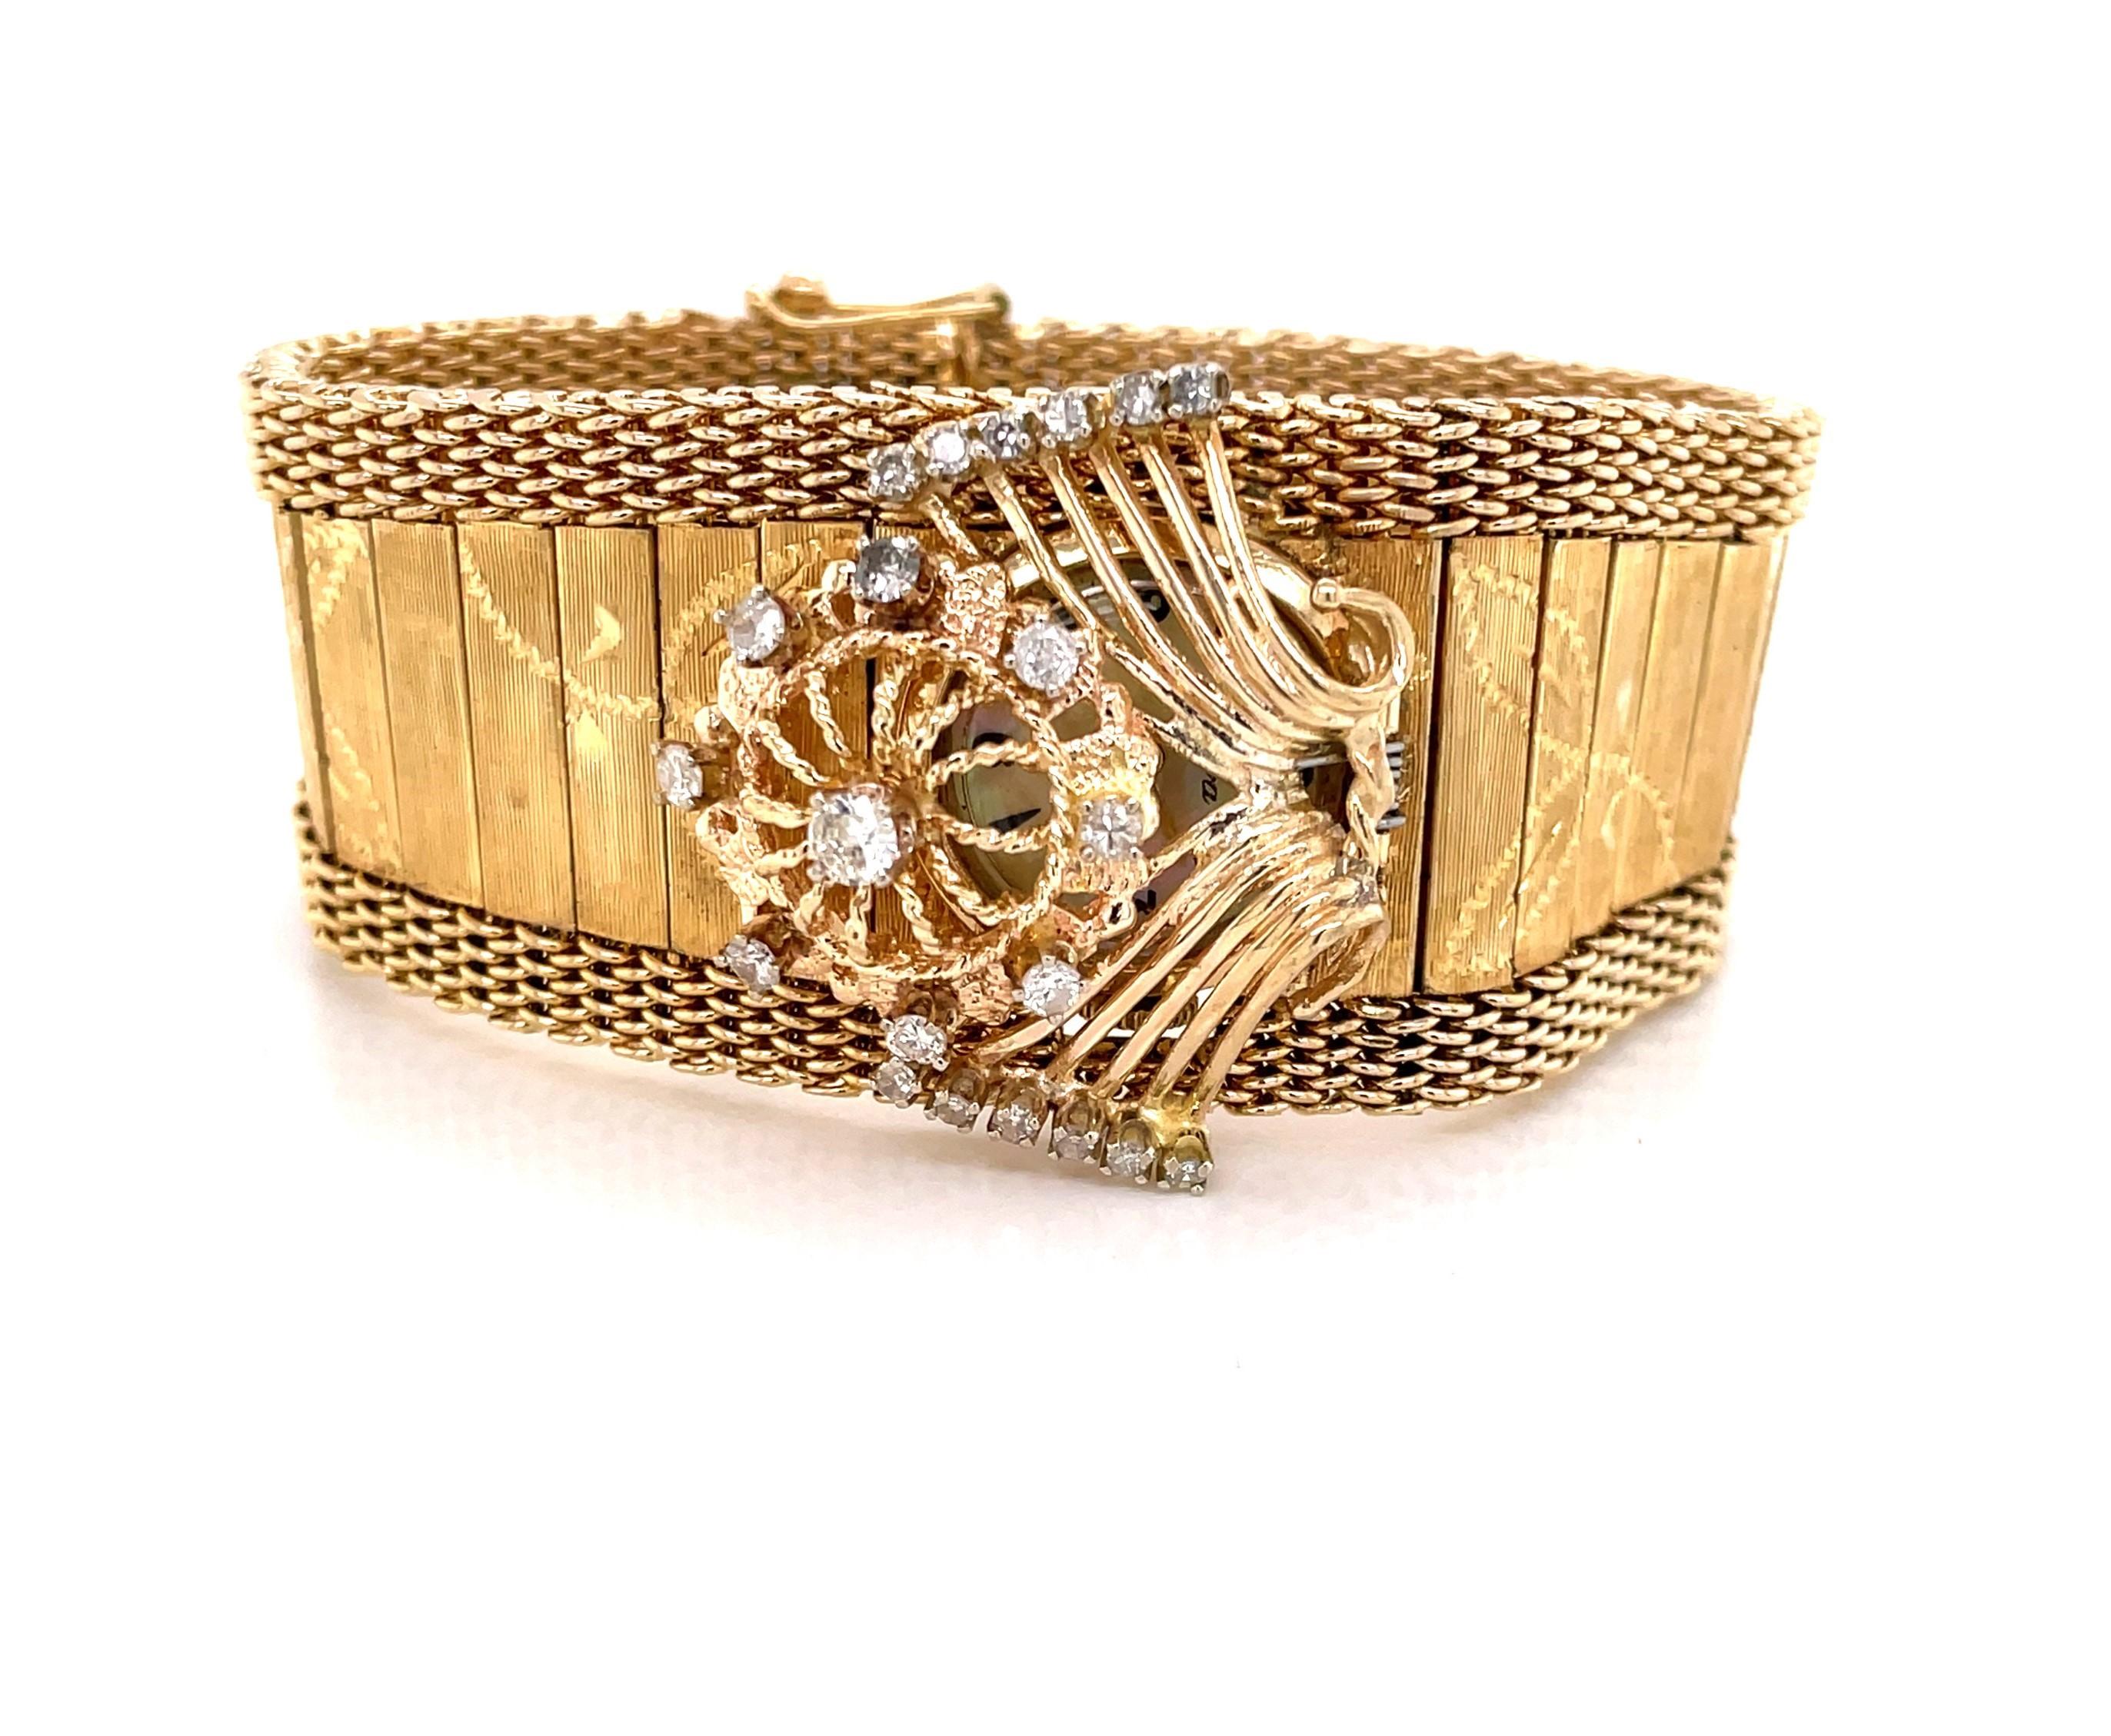 Ein einzigartiger filigraner Charme aus Diamanten und Gold bedeckt das Zifferblatt des versteckten Zeitmessers dieser einzigartigen Armbanduhr aus den 1940er Jahren. Reich an Stil, seine wunderschöne vierzehn Karat 14k Gelbgold floral graviert